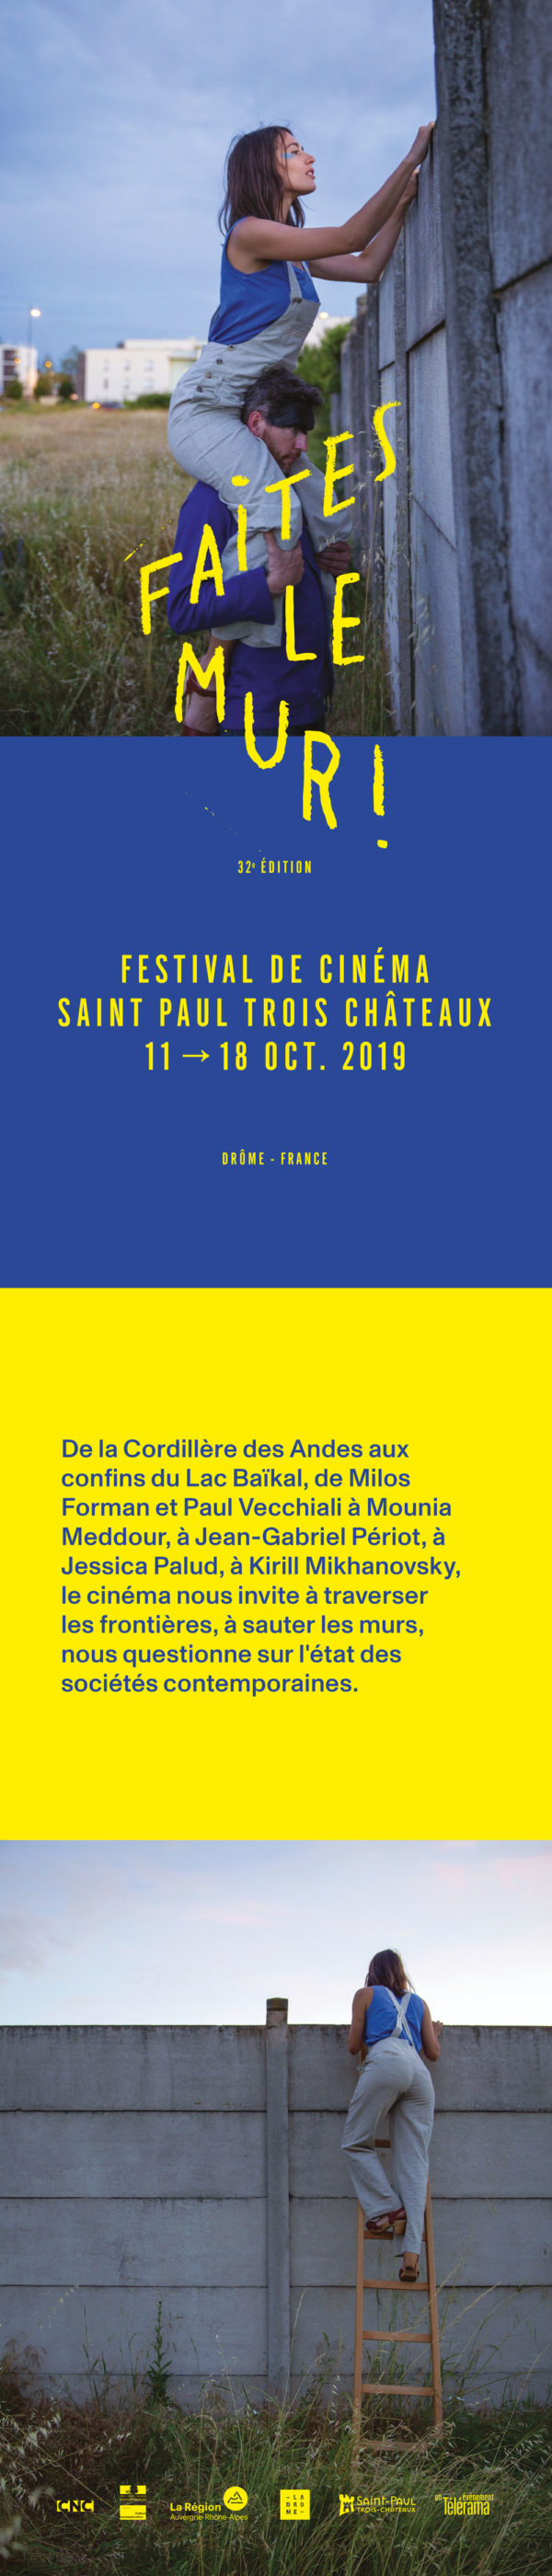 St-Paul Film Festival 2019